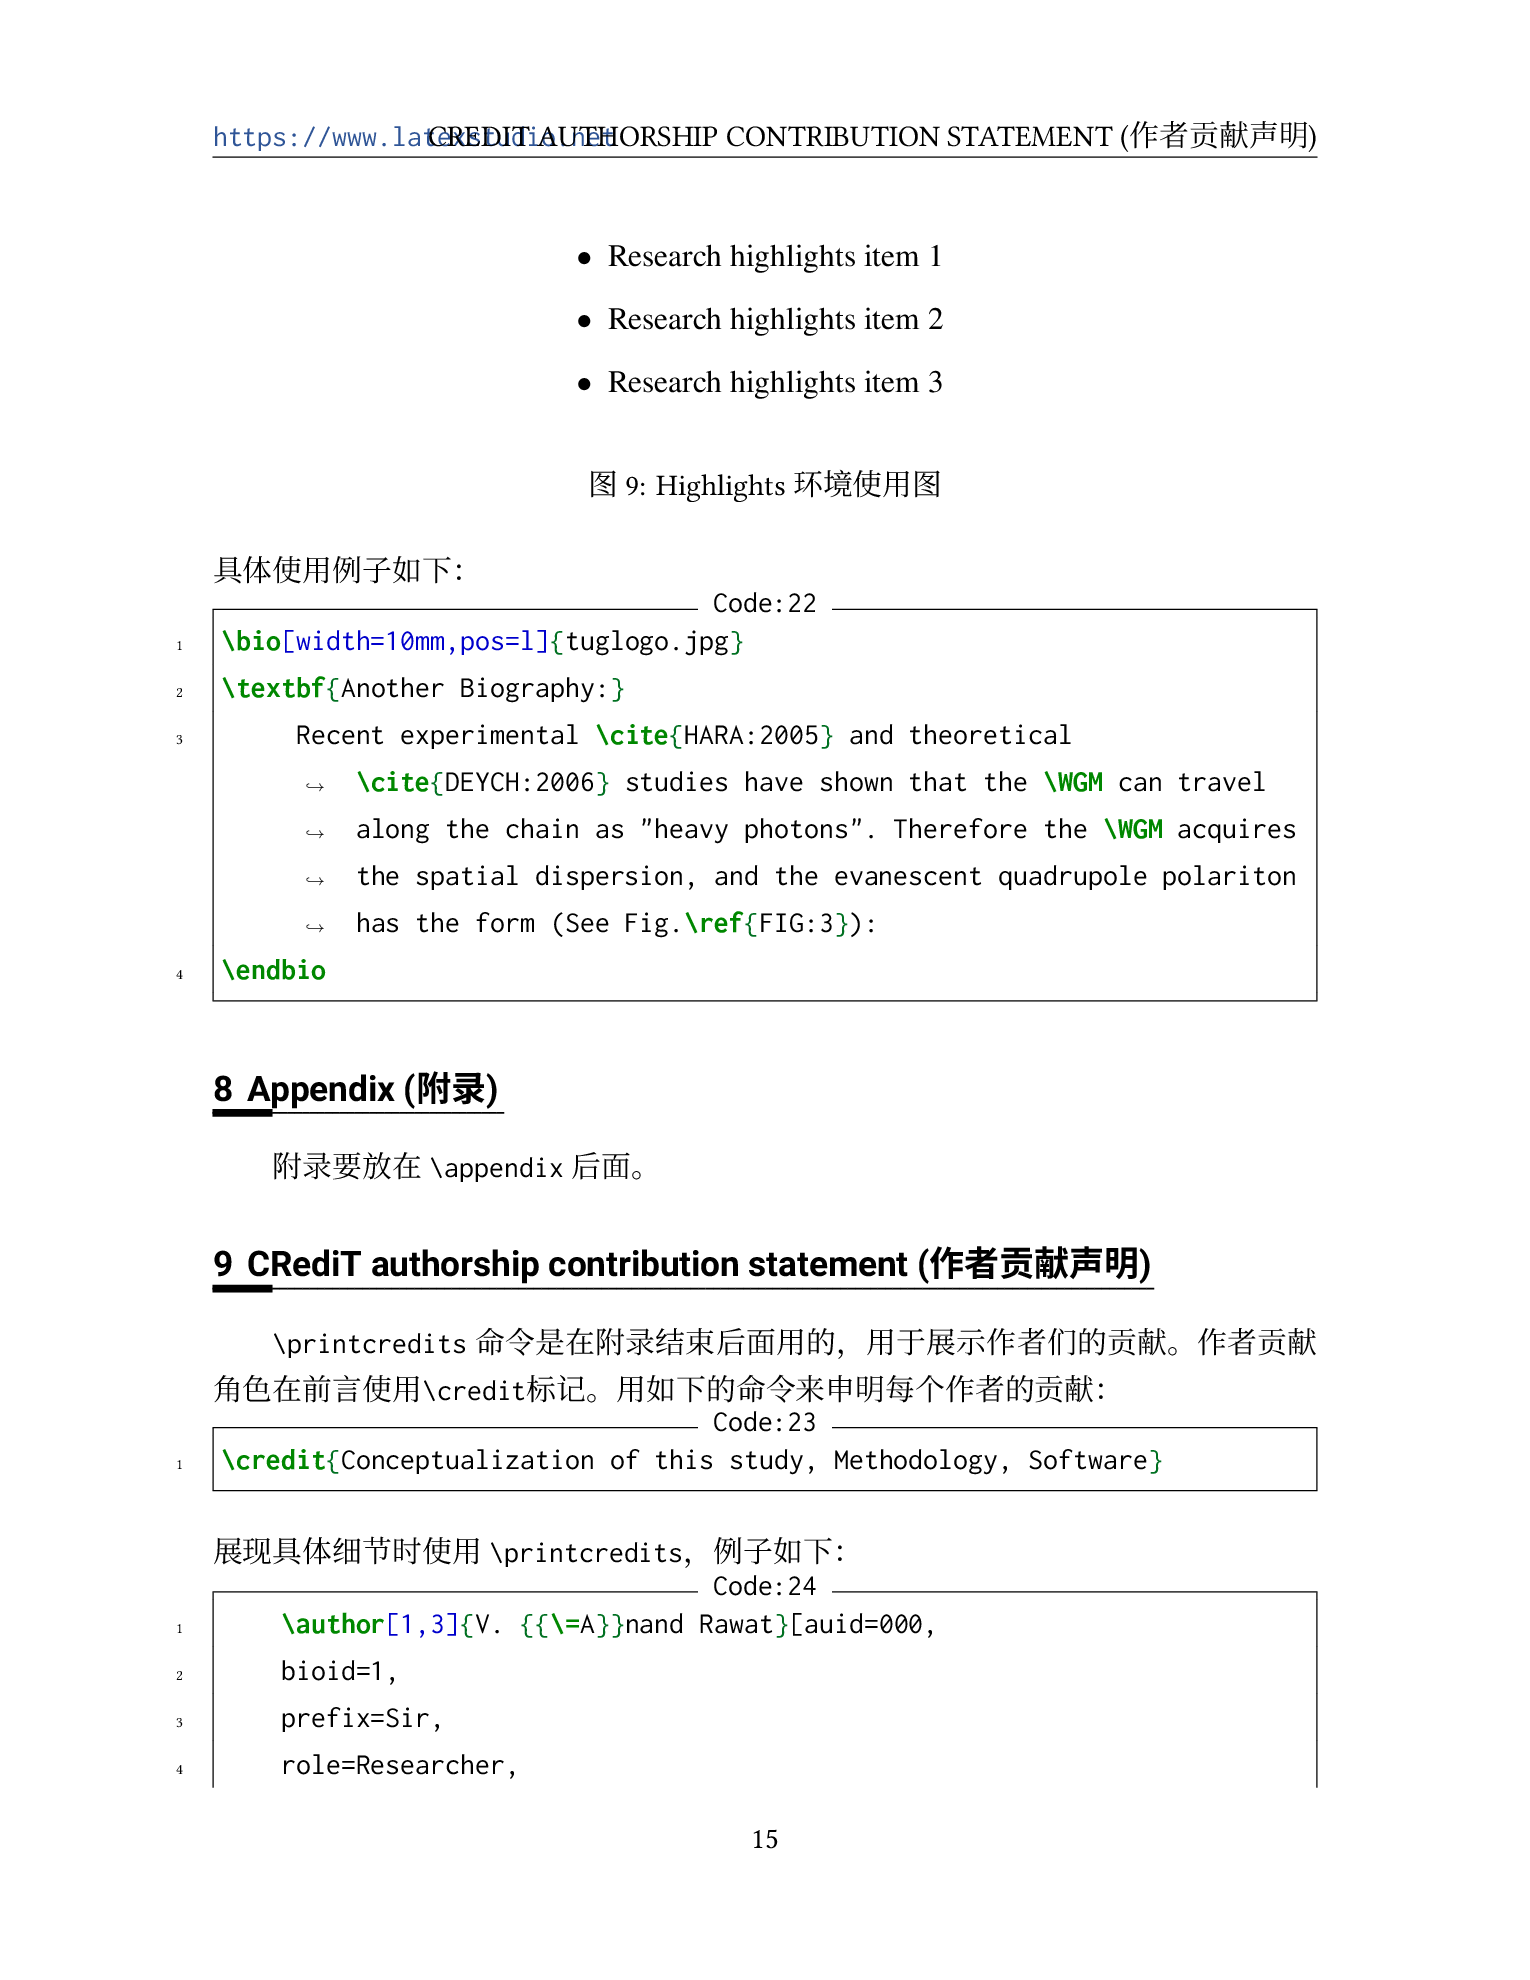 新版本 Elsarticle 投稿模板使用中文说明